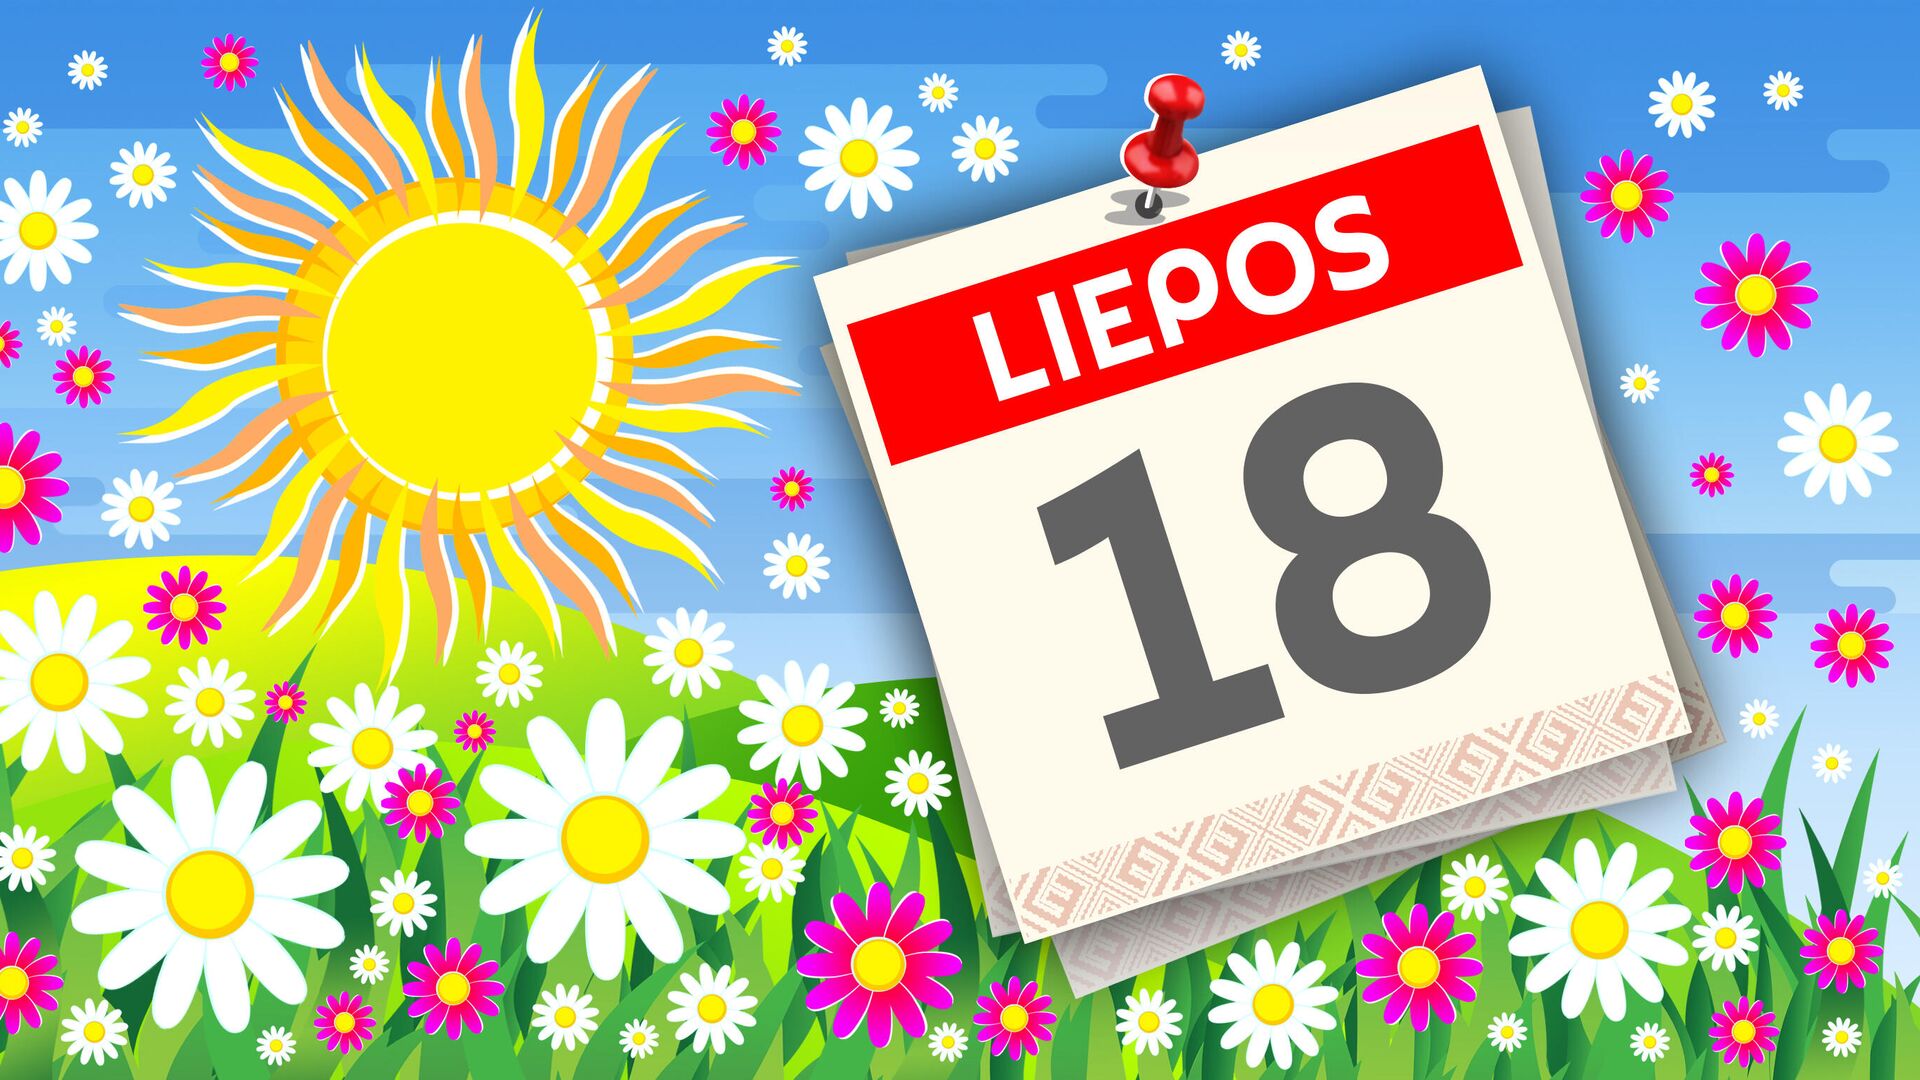 Kalendorius liepos 18 d. - Sputnik Lietuva, 1920, 18.07.2021